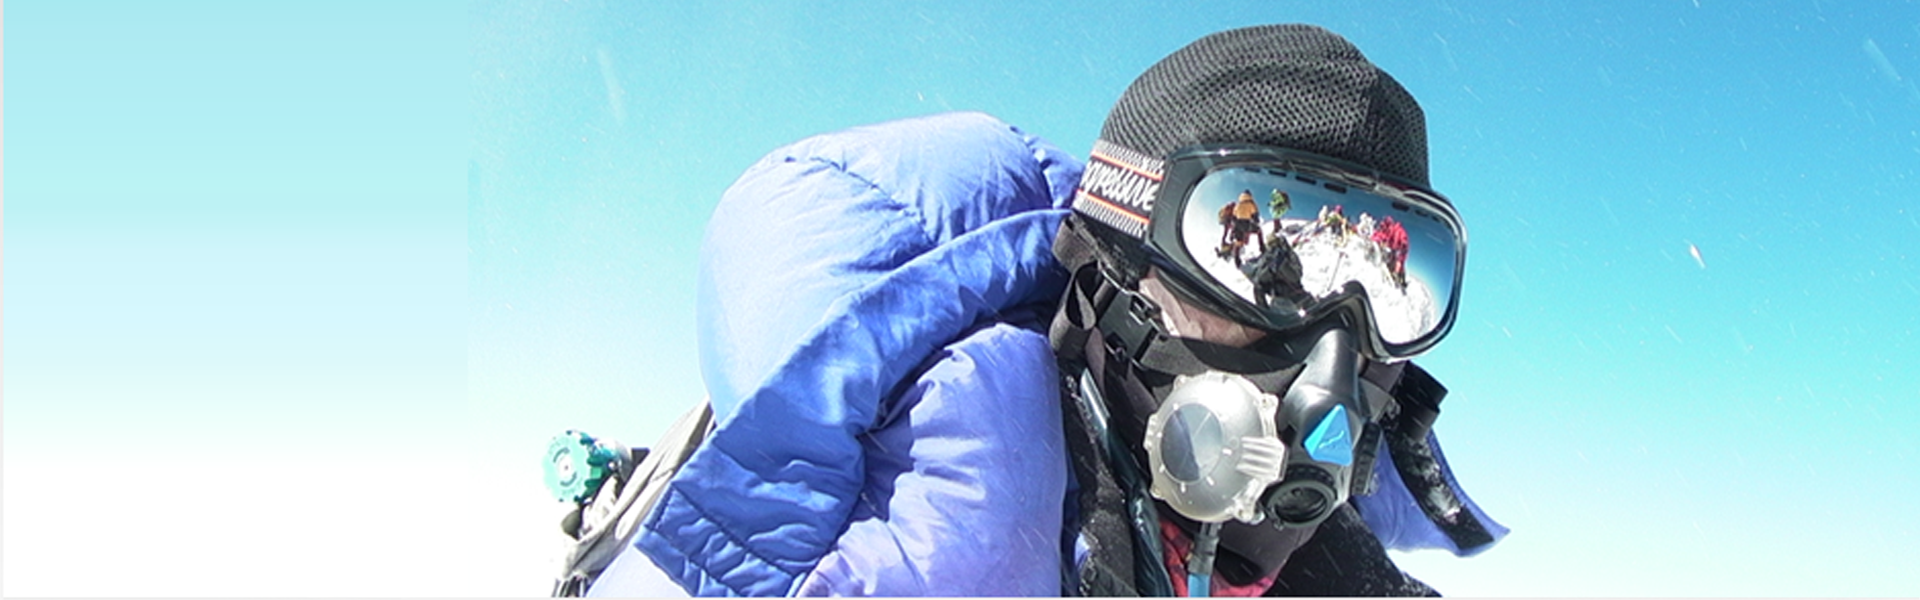 Adventure Consultants Everest Success